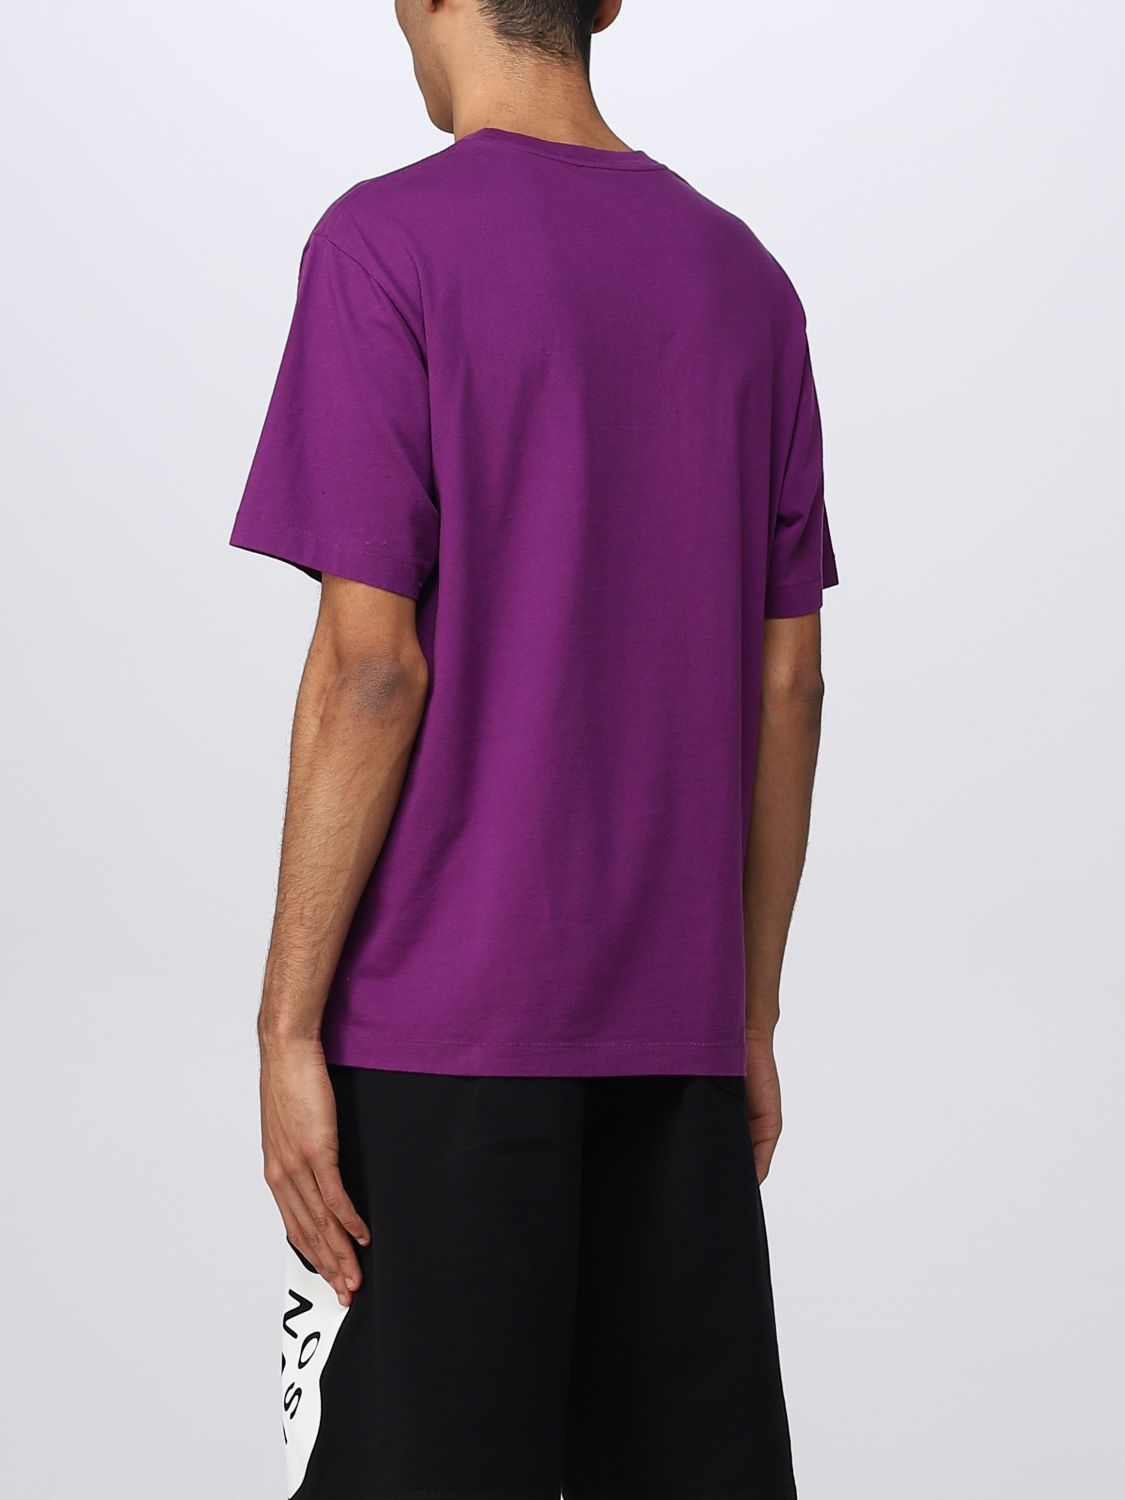 T-shirt Kenzo: T-shirt Boke Flower Kenzo in cotone viola 3